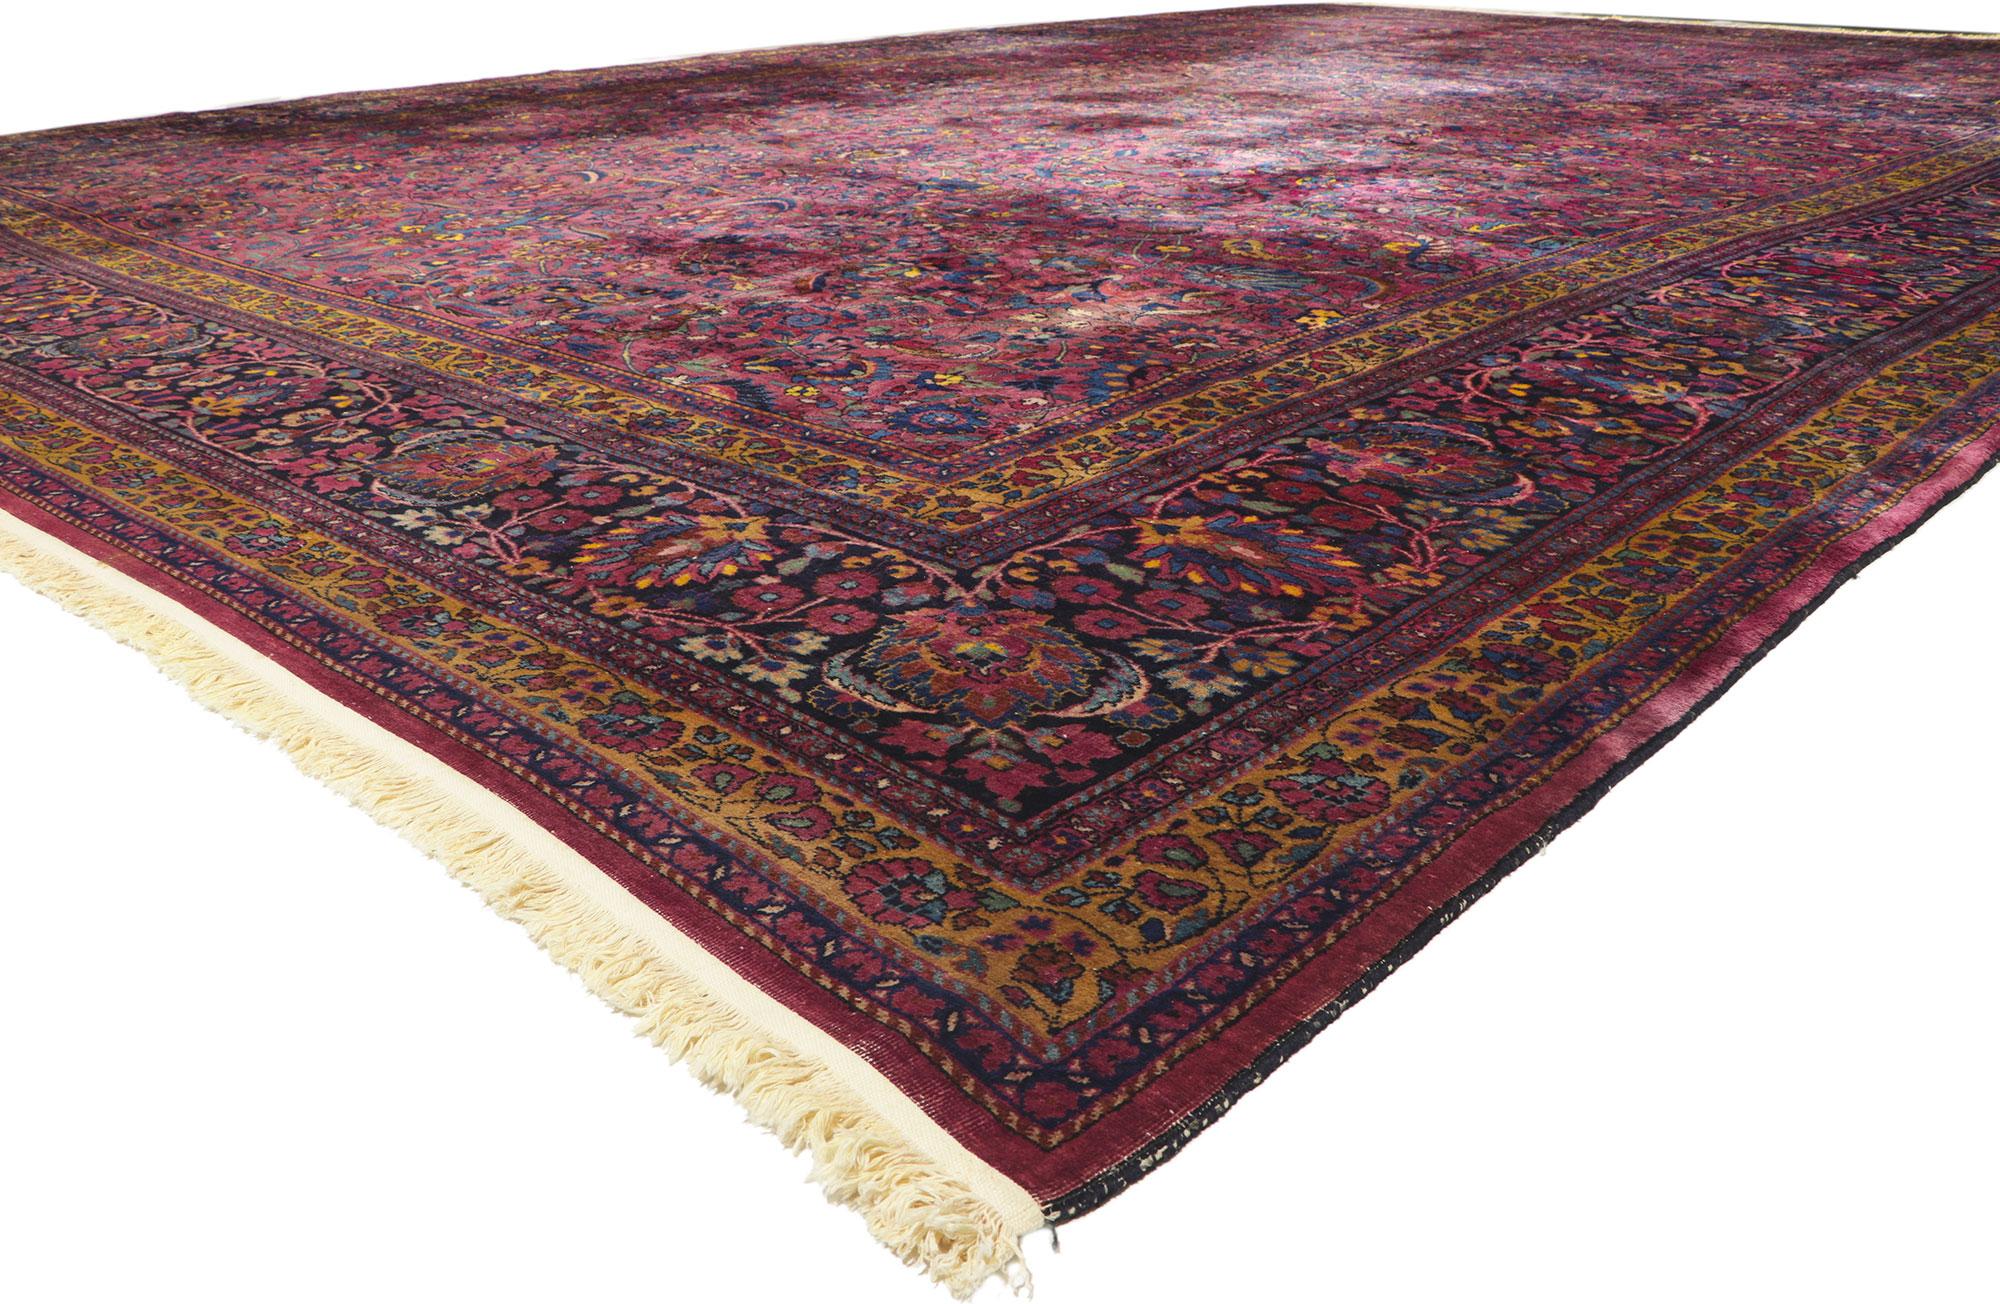 78355 Antiker persischer Mashhad-Teppich, 15'03 x 23'09.
Mit seiner mühelosen Schönheit und zeitlosen Anziehungskraft kann dieser handgeknüpfte, antike persische Mashhad-Teppich aus Wolle wunderbar mit modernen, zeitgenössischen und traditionellen